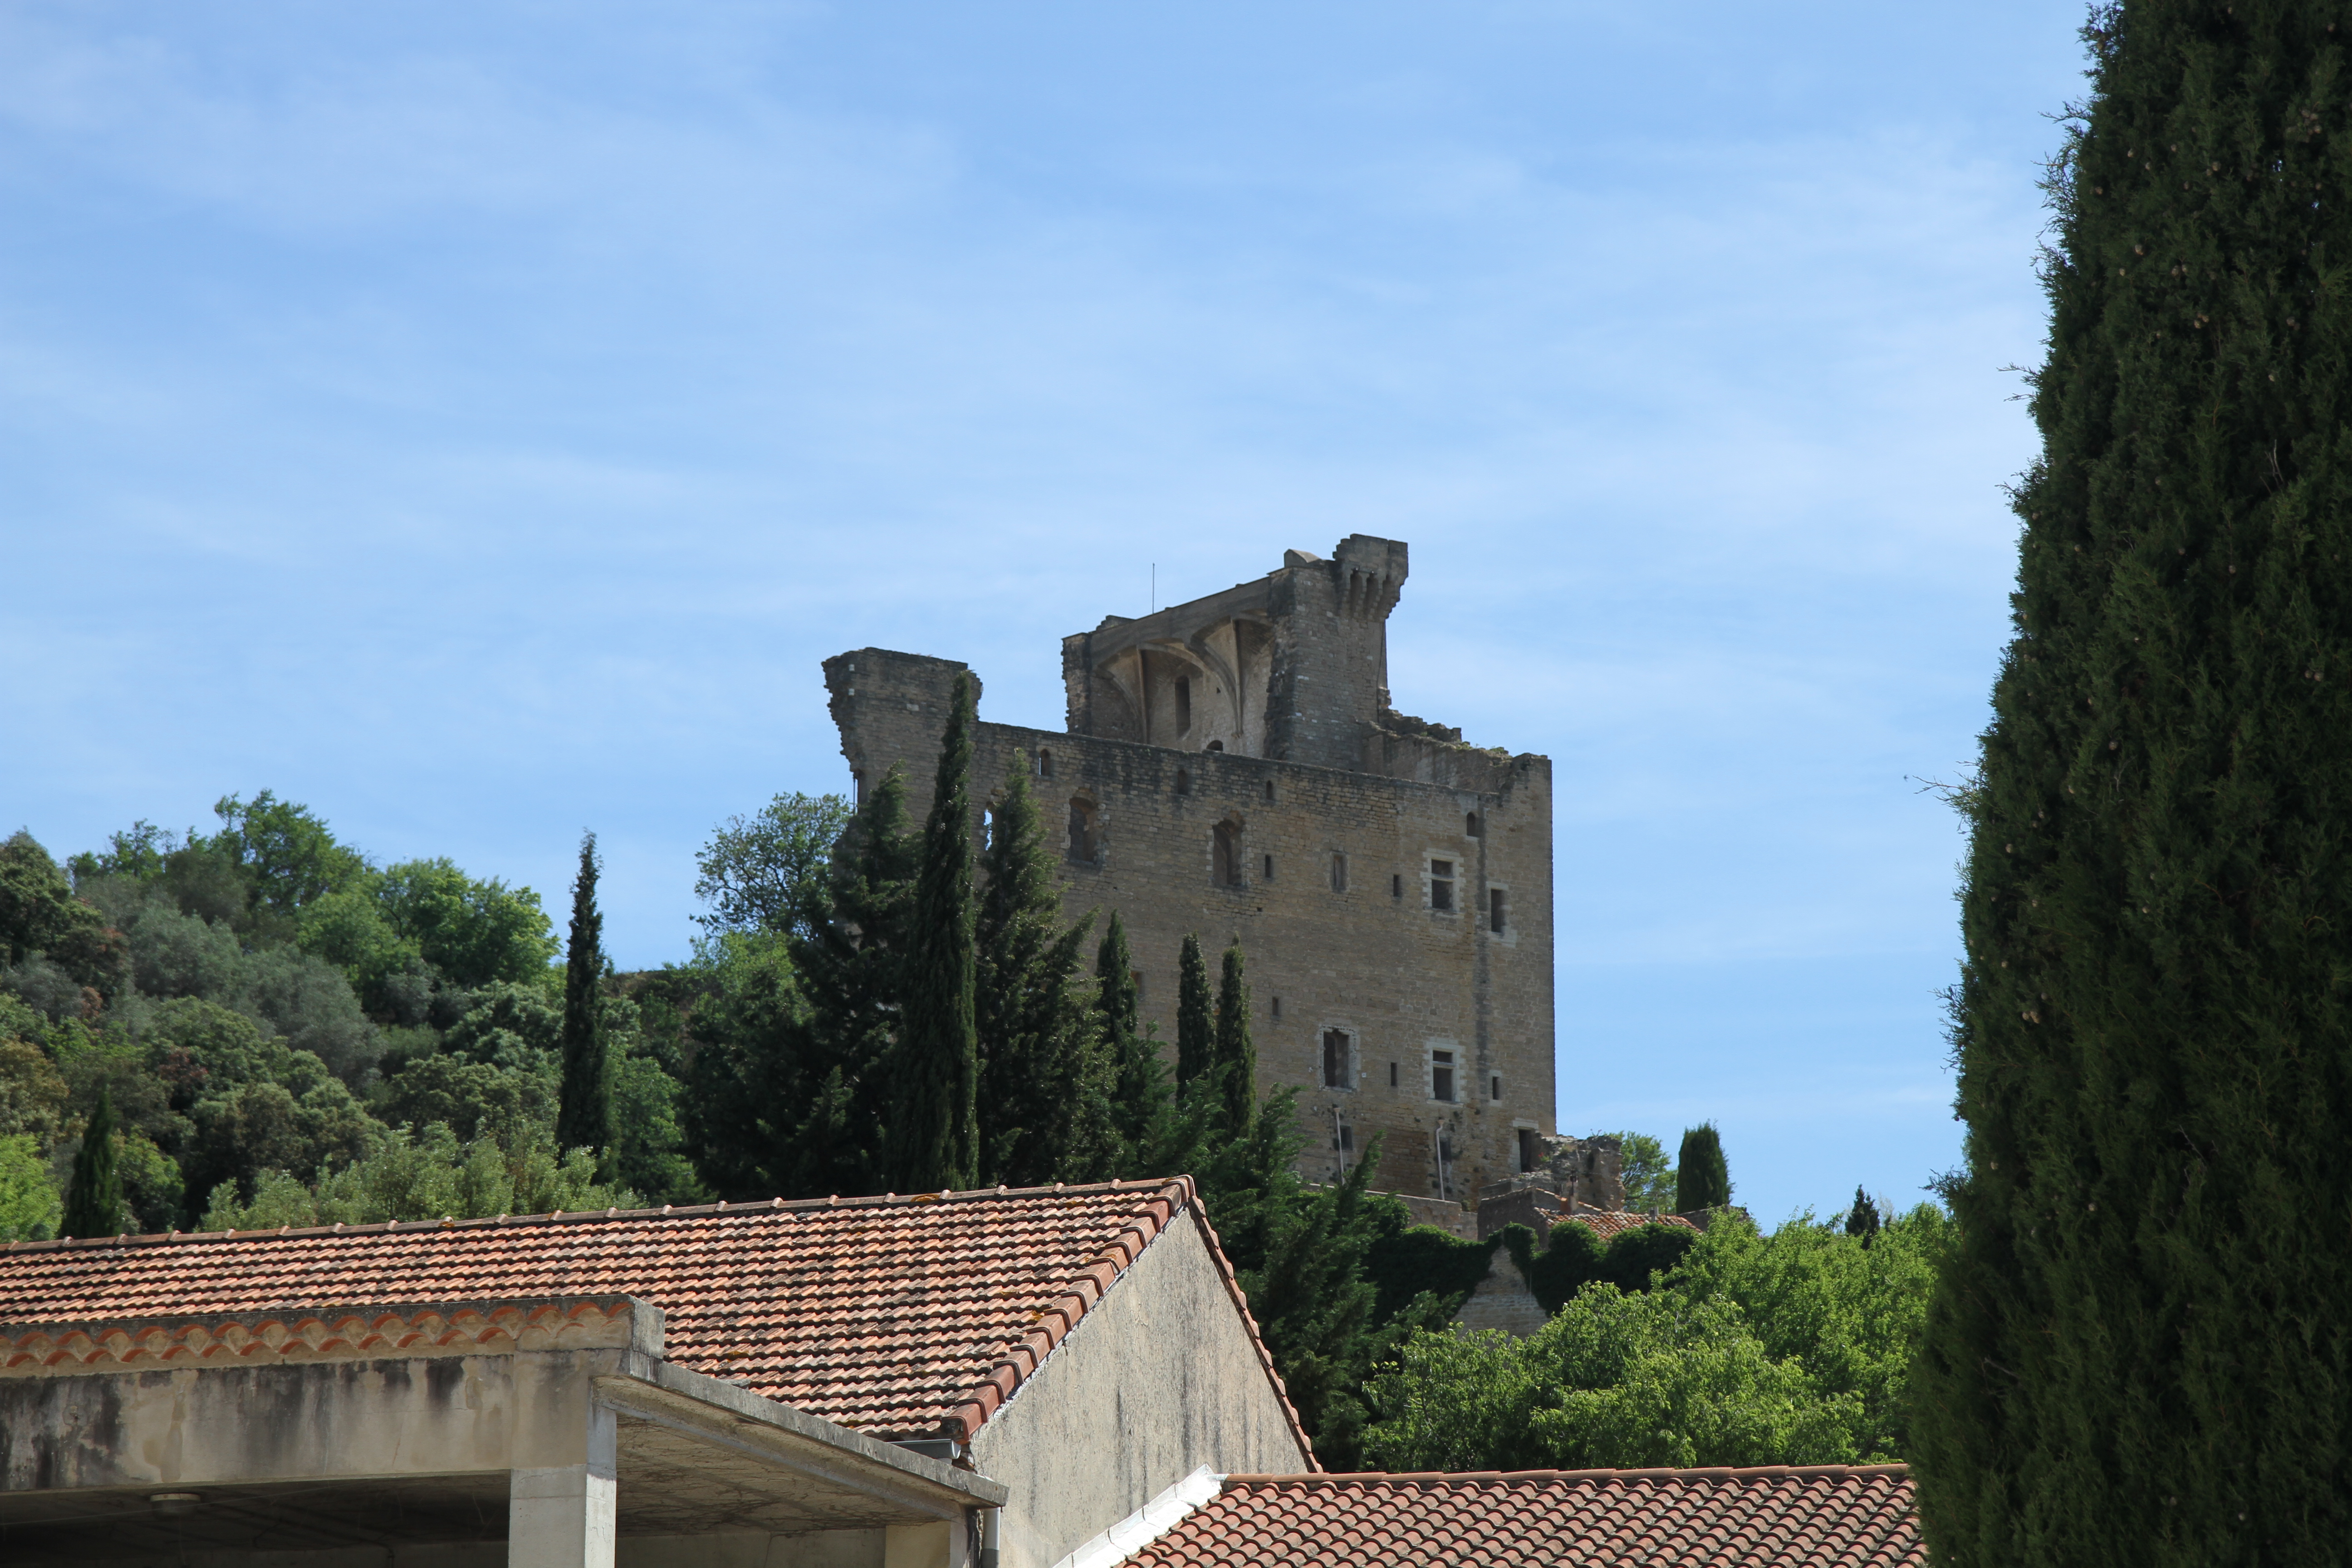 The Cheateauneuf-du-Pape castle